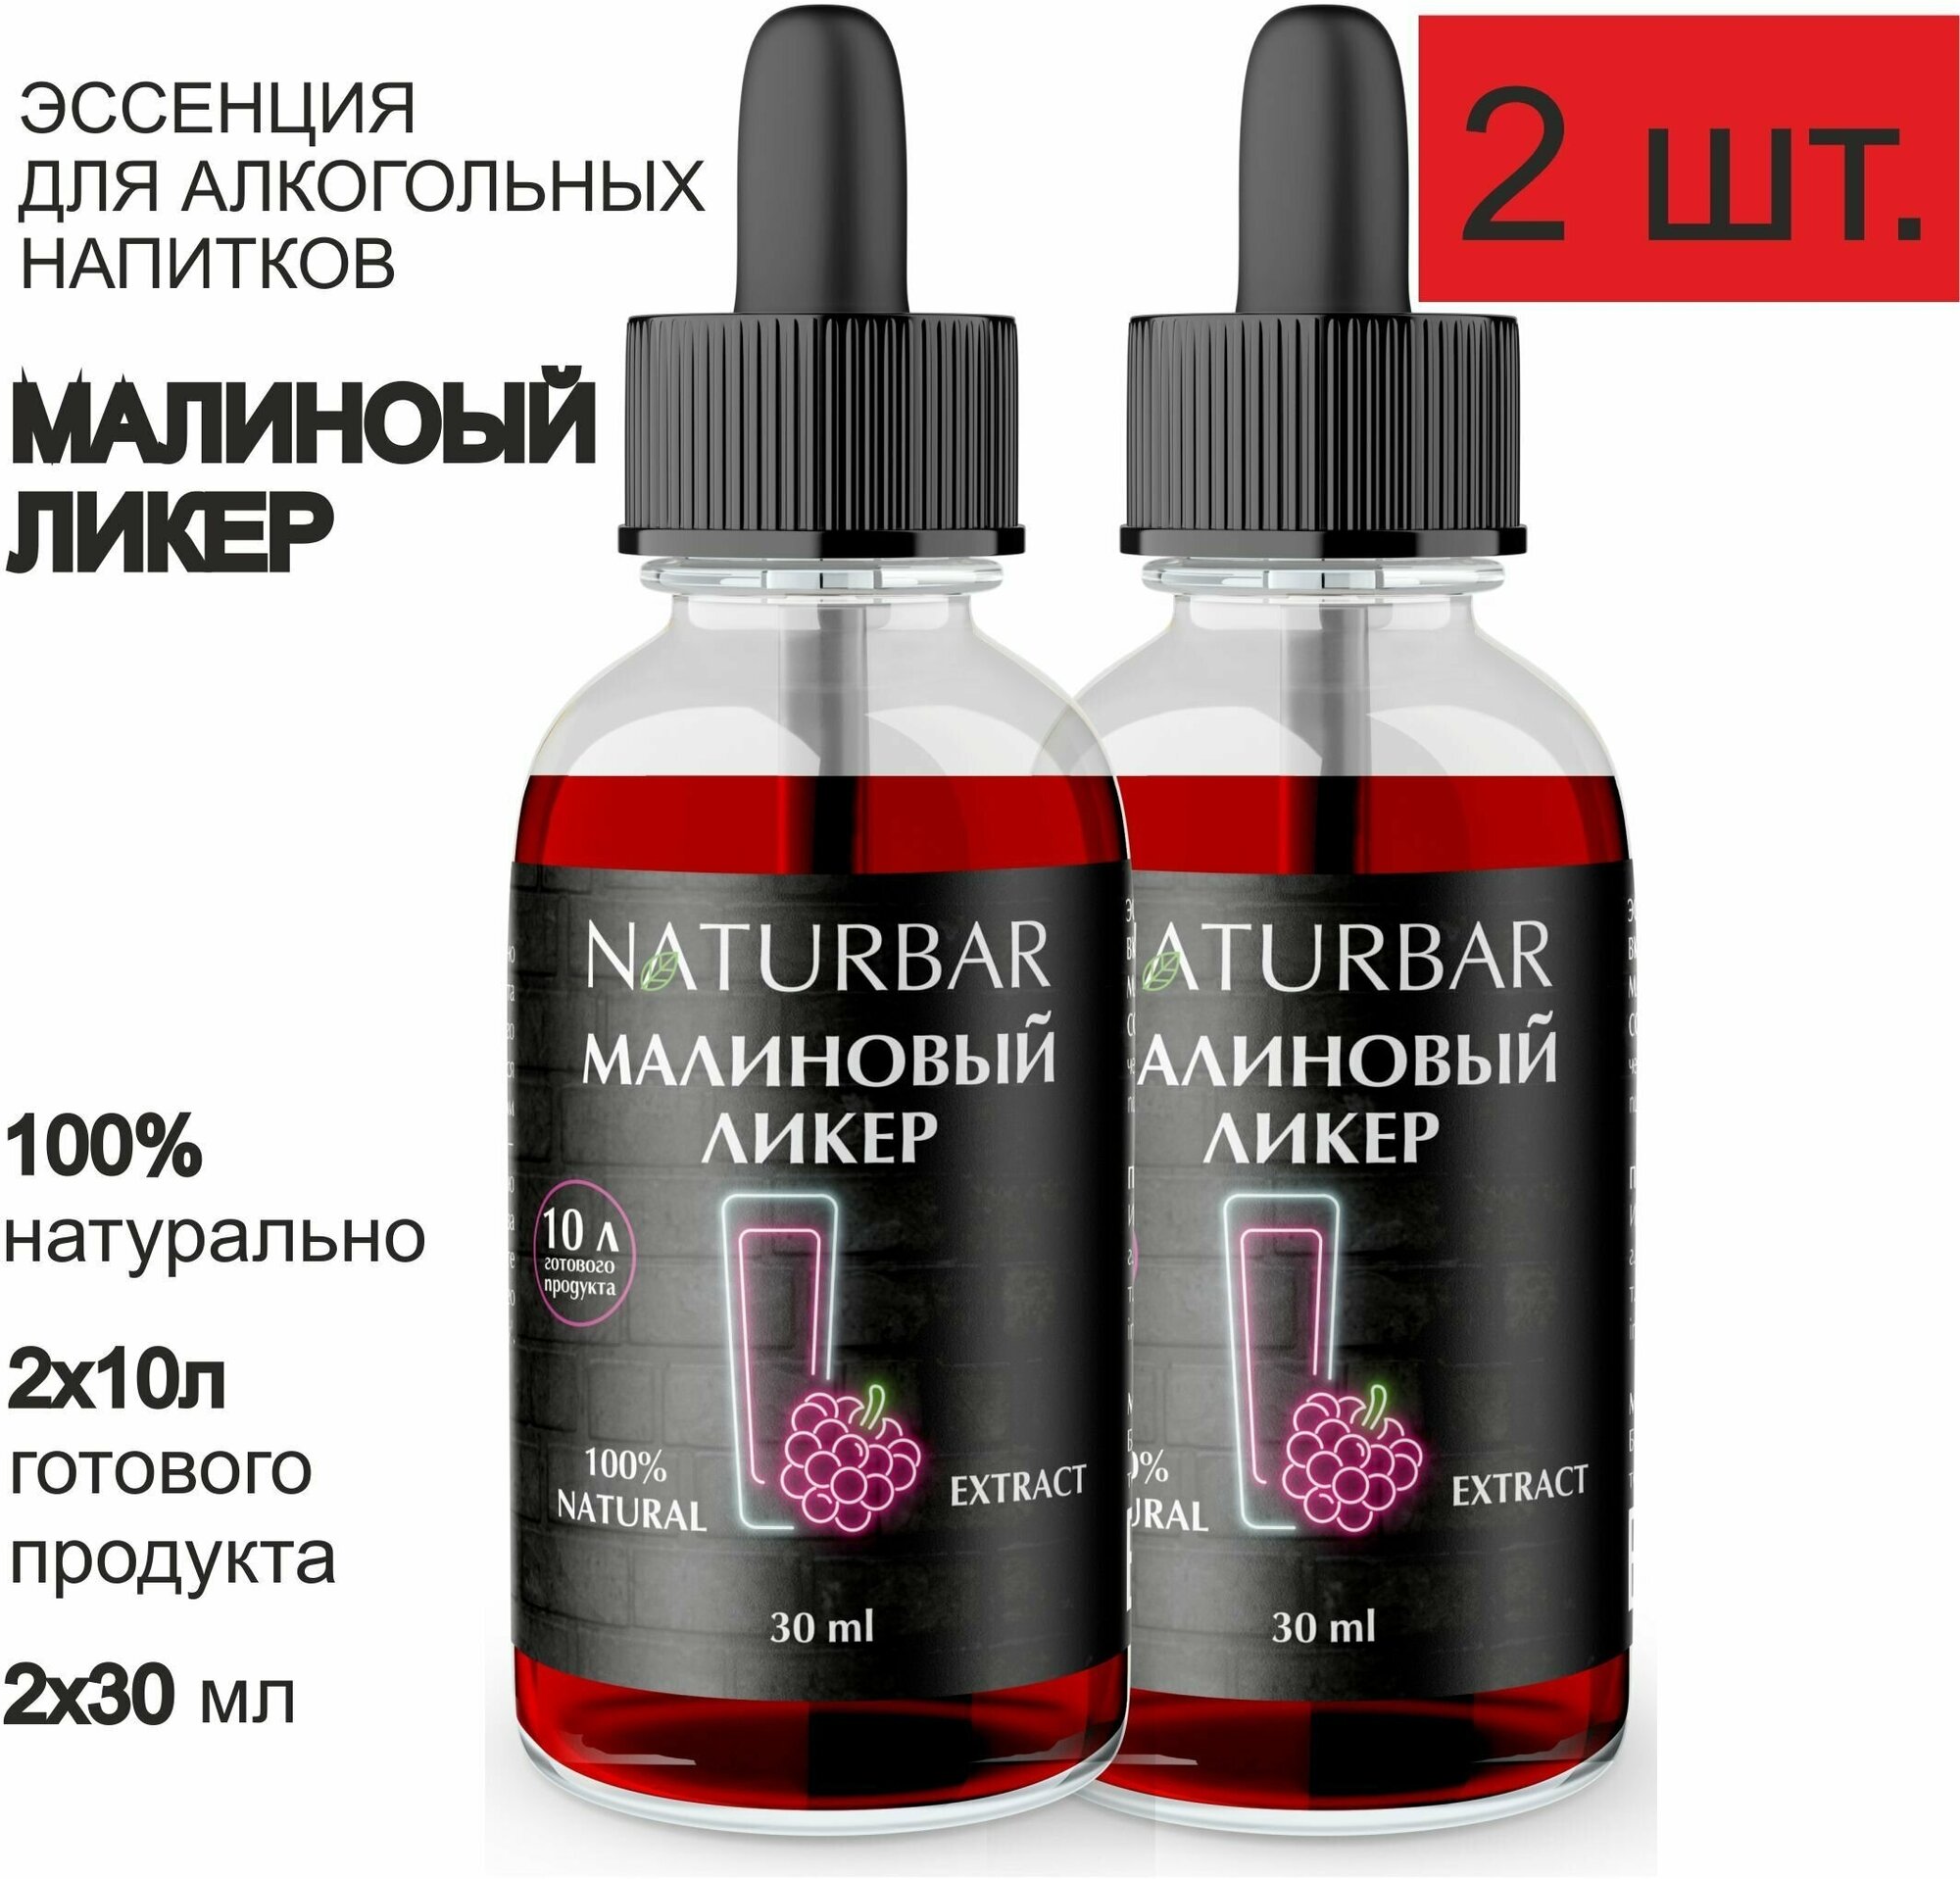 Эссенция малиновый ликер Raspberry liquor вкусовой концентрат (ароматизатор пищевой), для самогона, 30 мл - 2 шт.